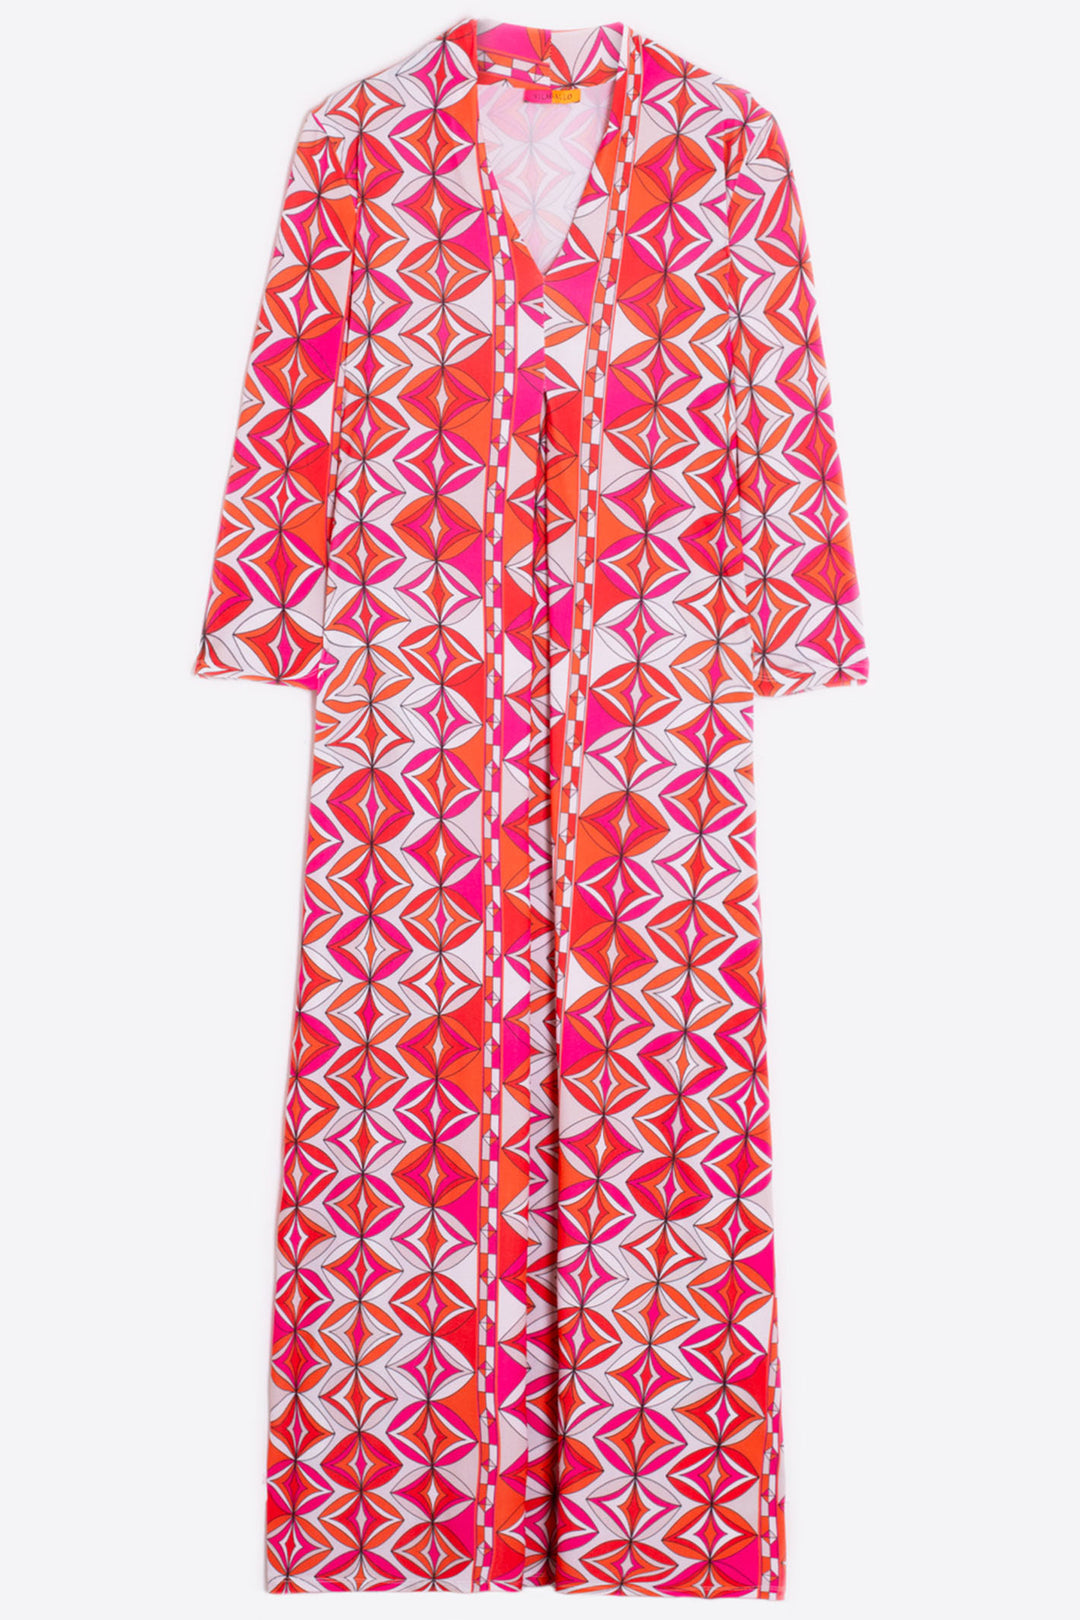 Vilagallo 31113 Pink Retro Print V-Neck Dress - Olivia Grace Fashion